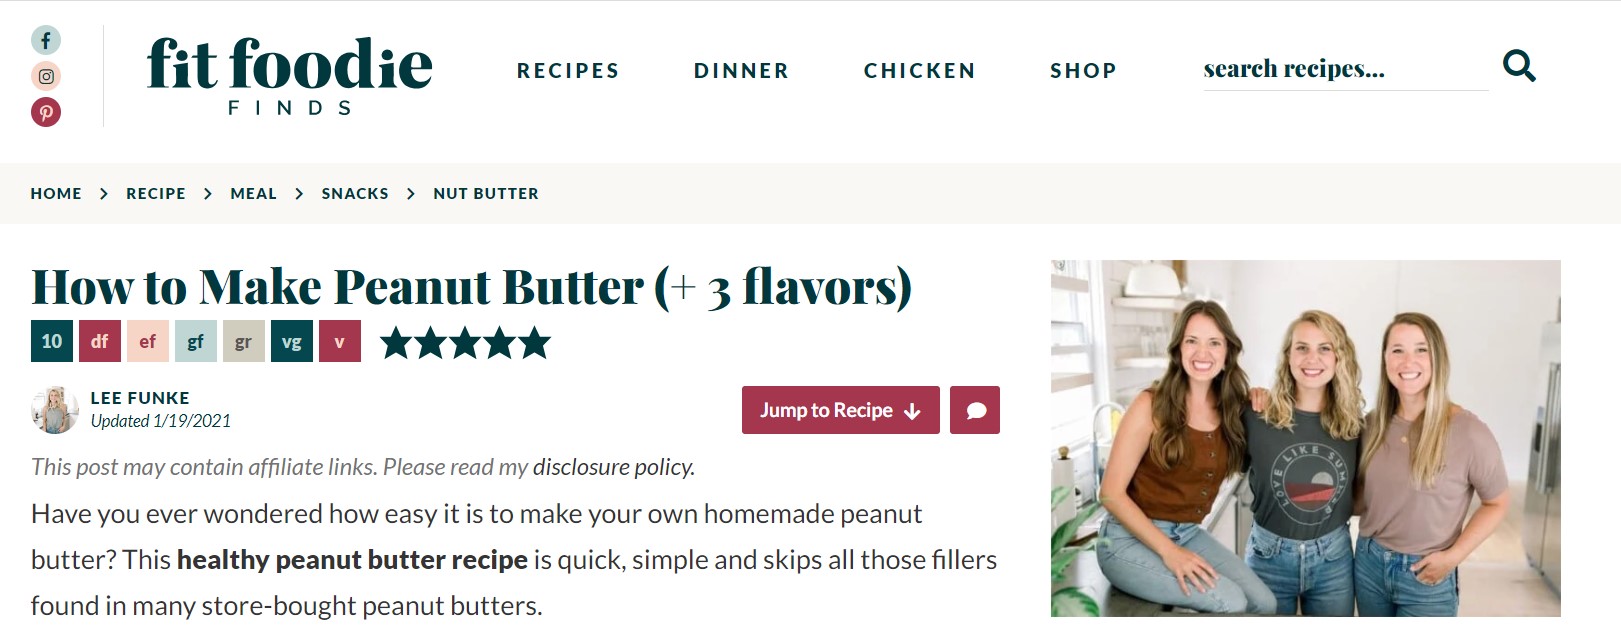 artigo sobre como fazer manteiga de amendoim